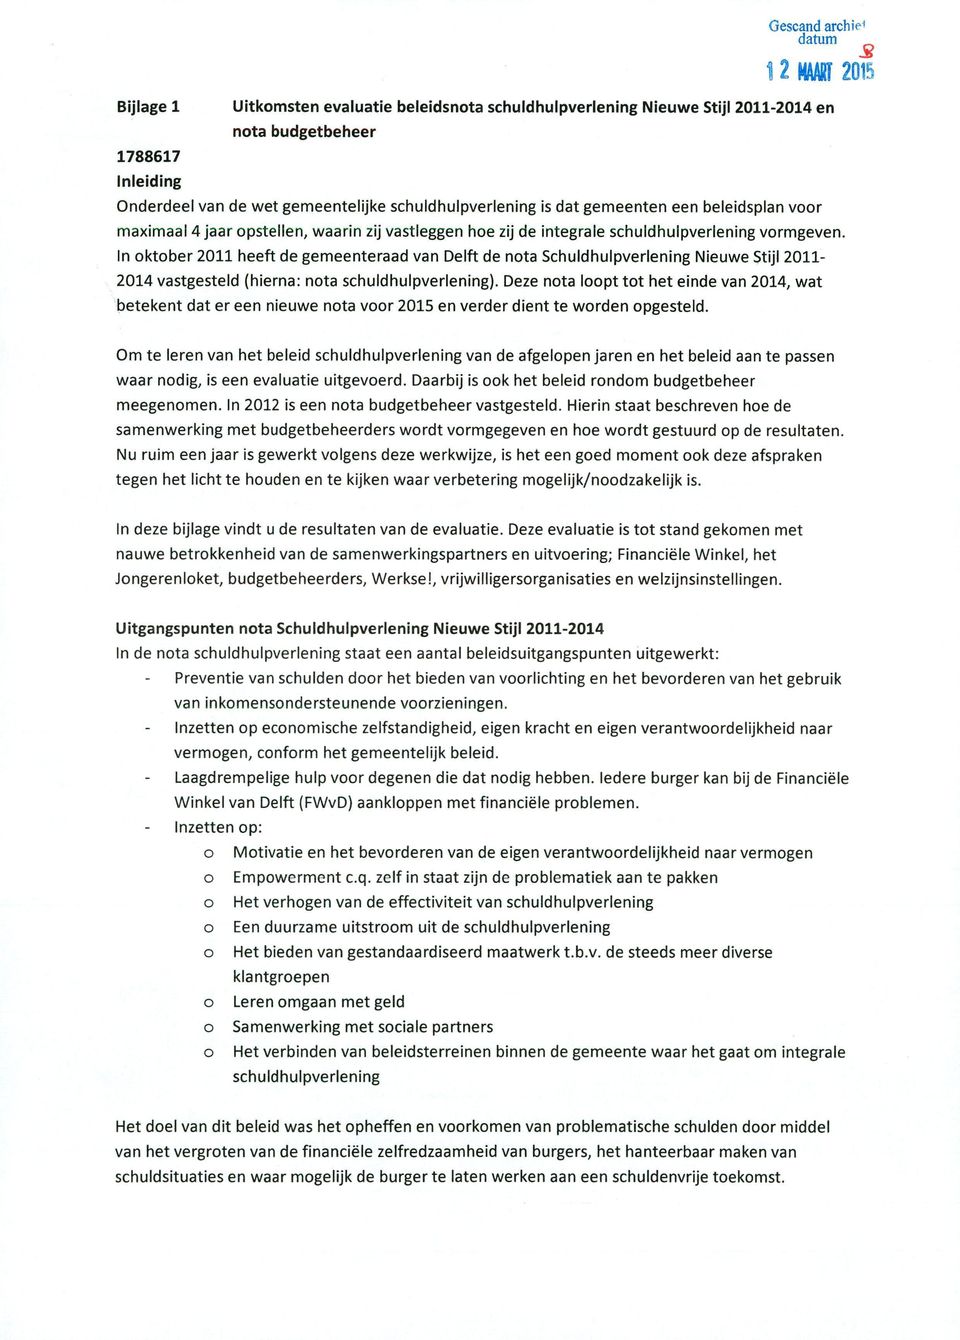 In oktober 2011 heeft de gemeenteraad van Delft de nota Schuldhulpverlening Nieuwe Stijl 2011-2014 vastgesteld (hierna: nota schuldhulpverlening).